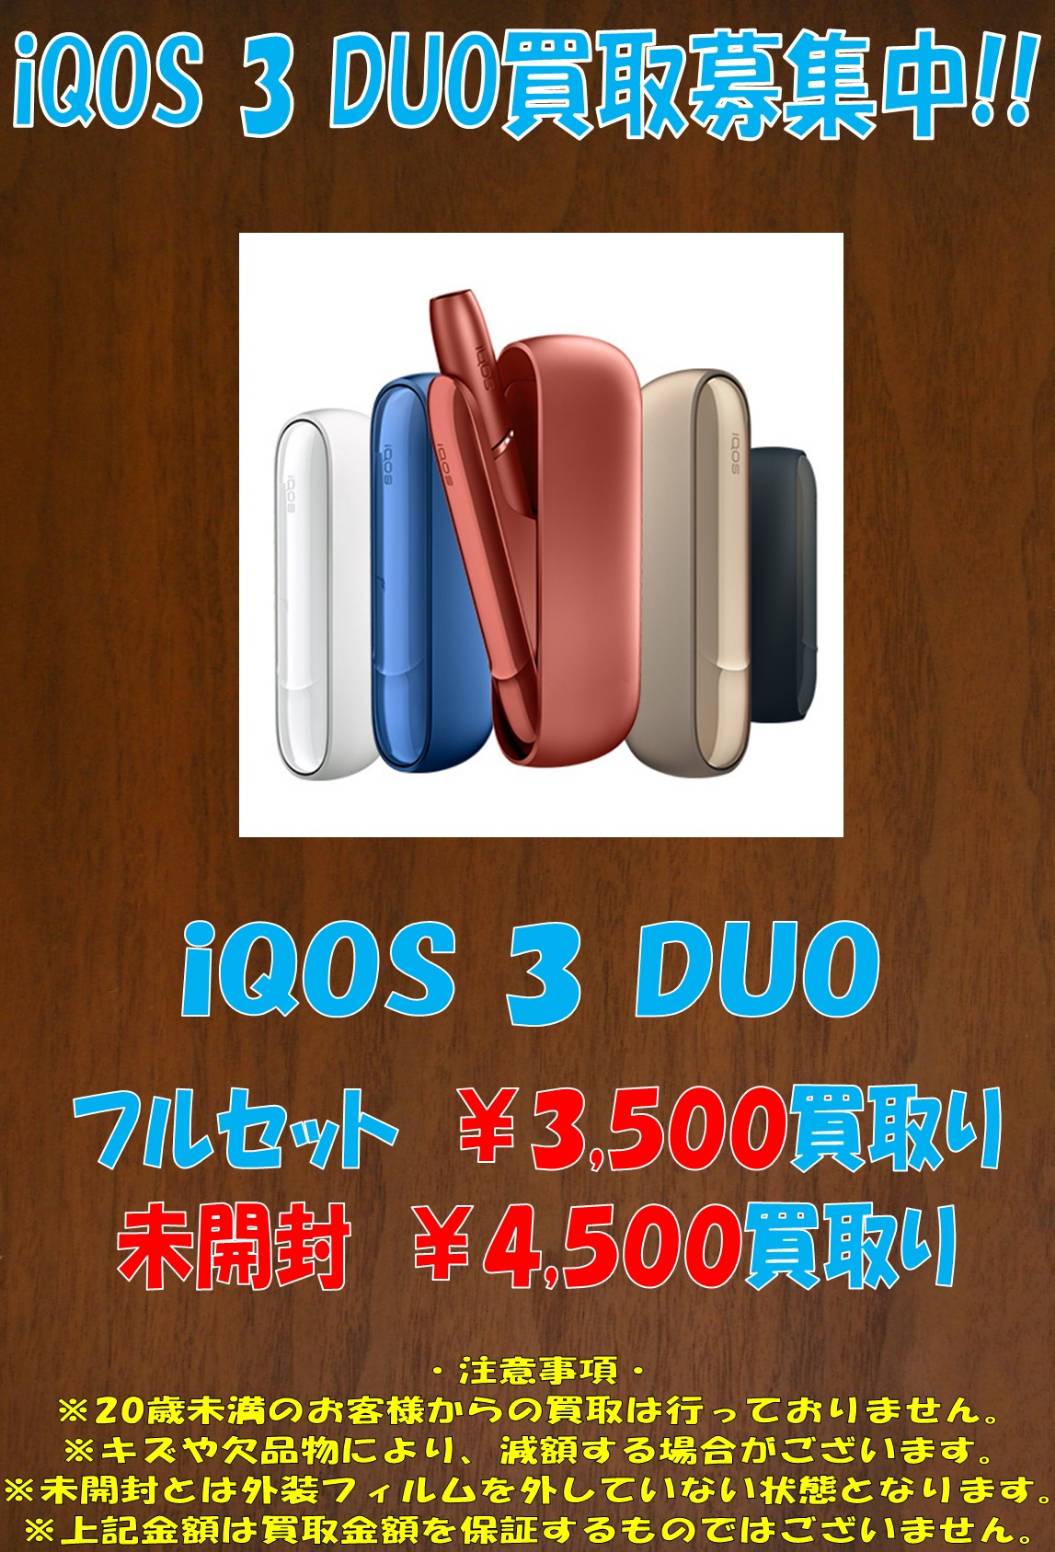 7 29 電子タバコ買取情報です Iqos3 Duo Glo Hyper Pro Nano 夢大陸 松本店